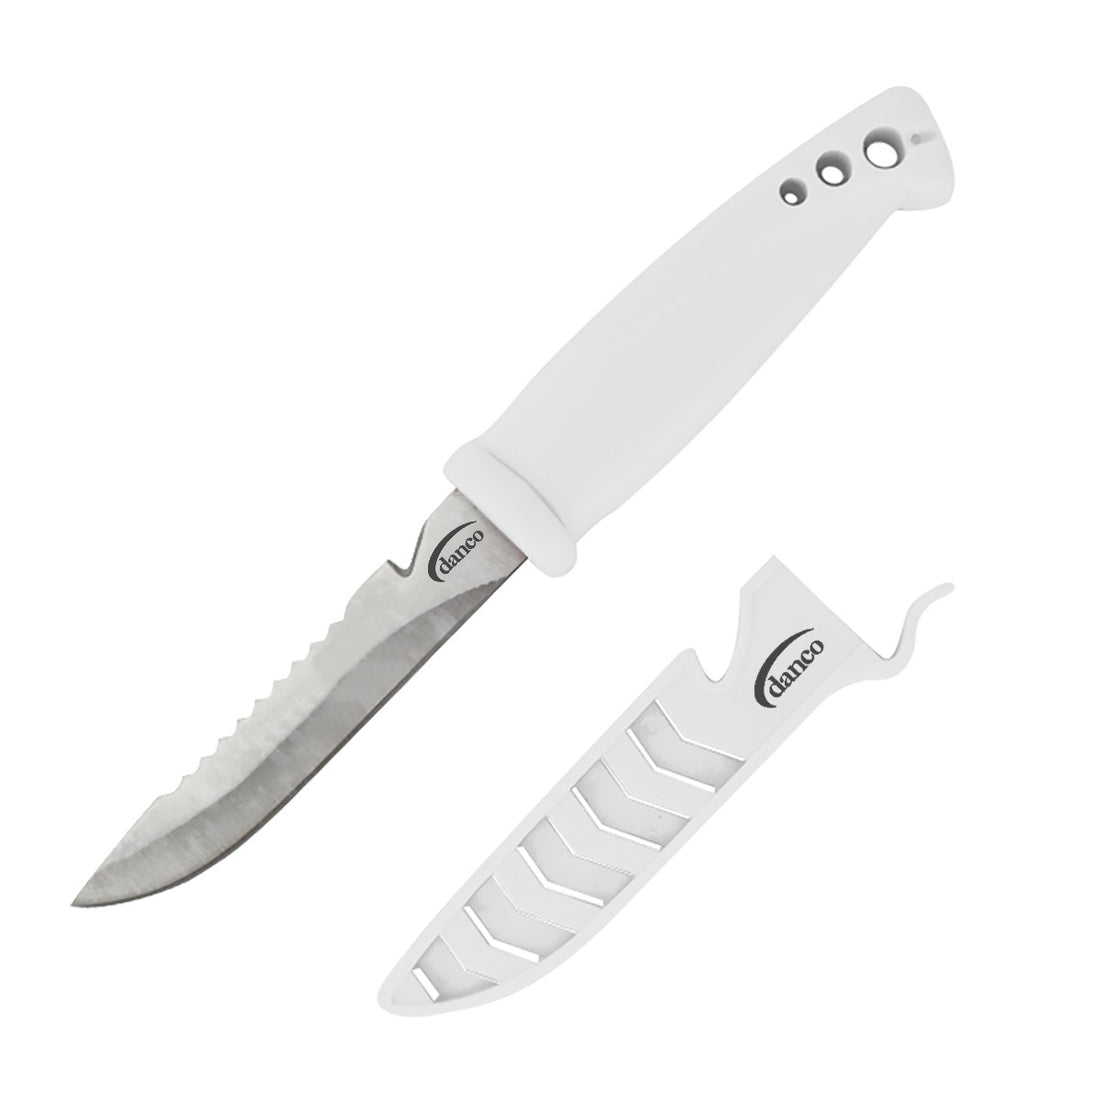 Danco 4" Bait Knife - Angler Series - White